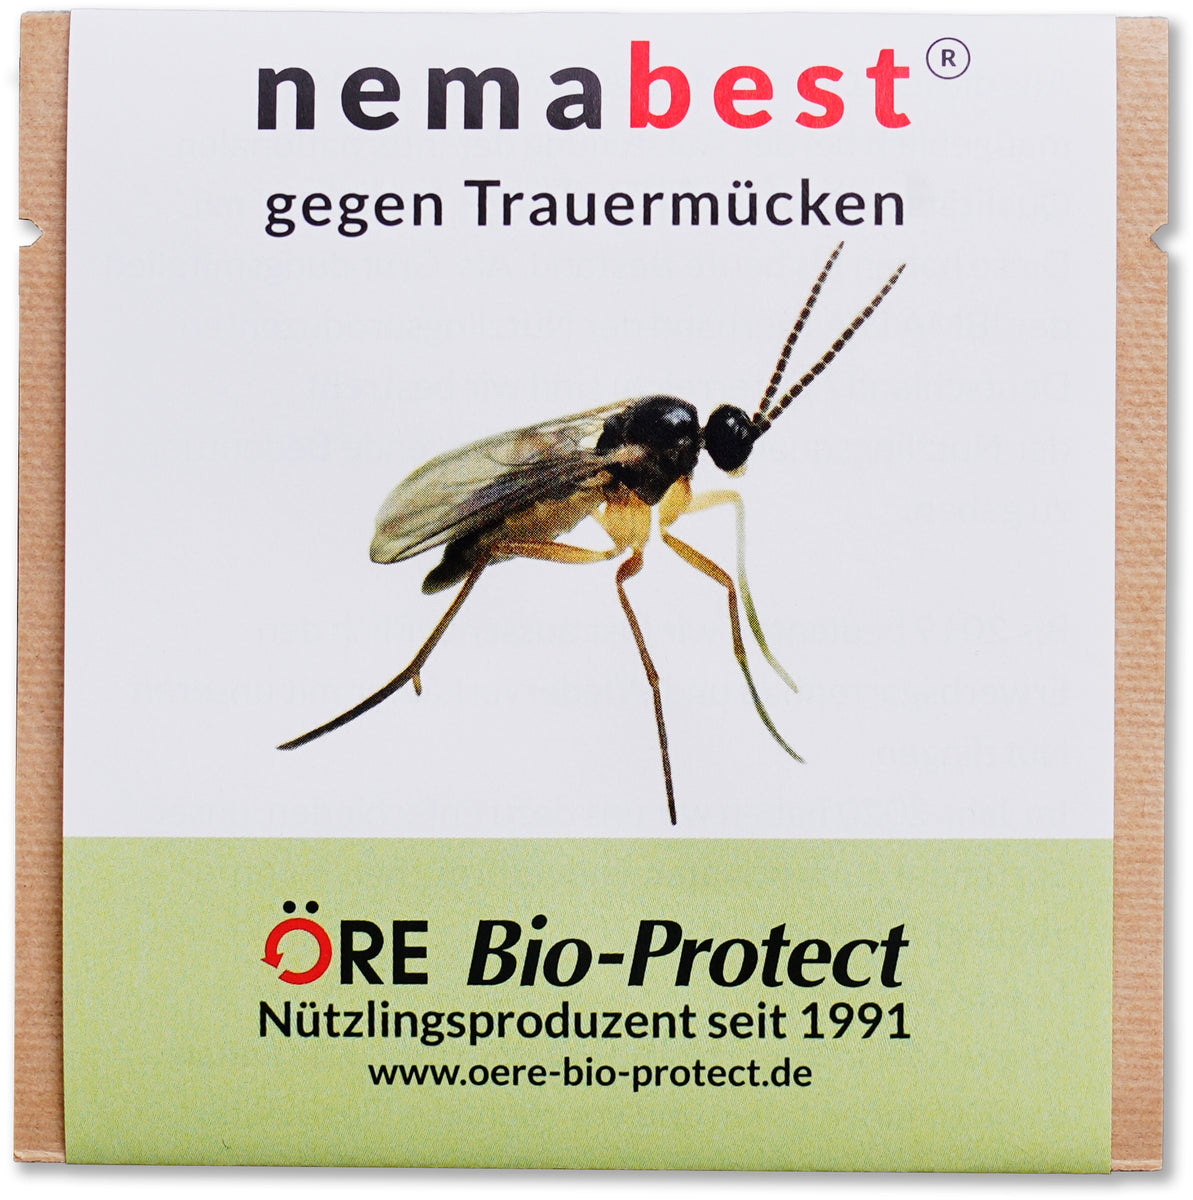 shop.oere-bio-protect.de